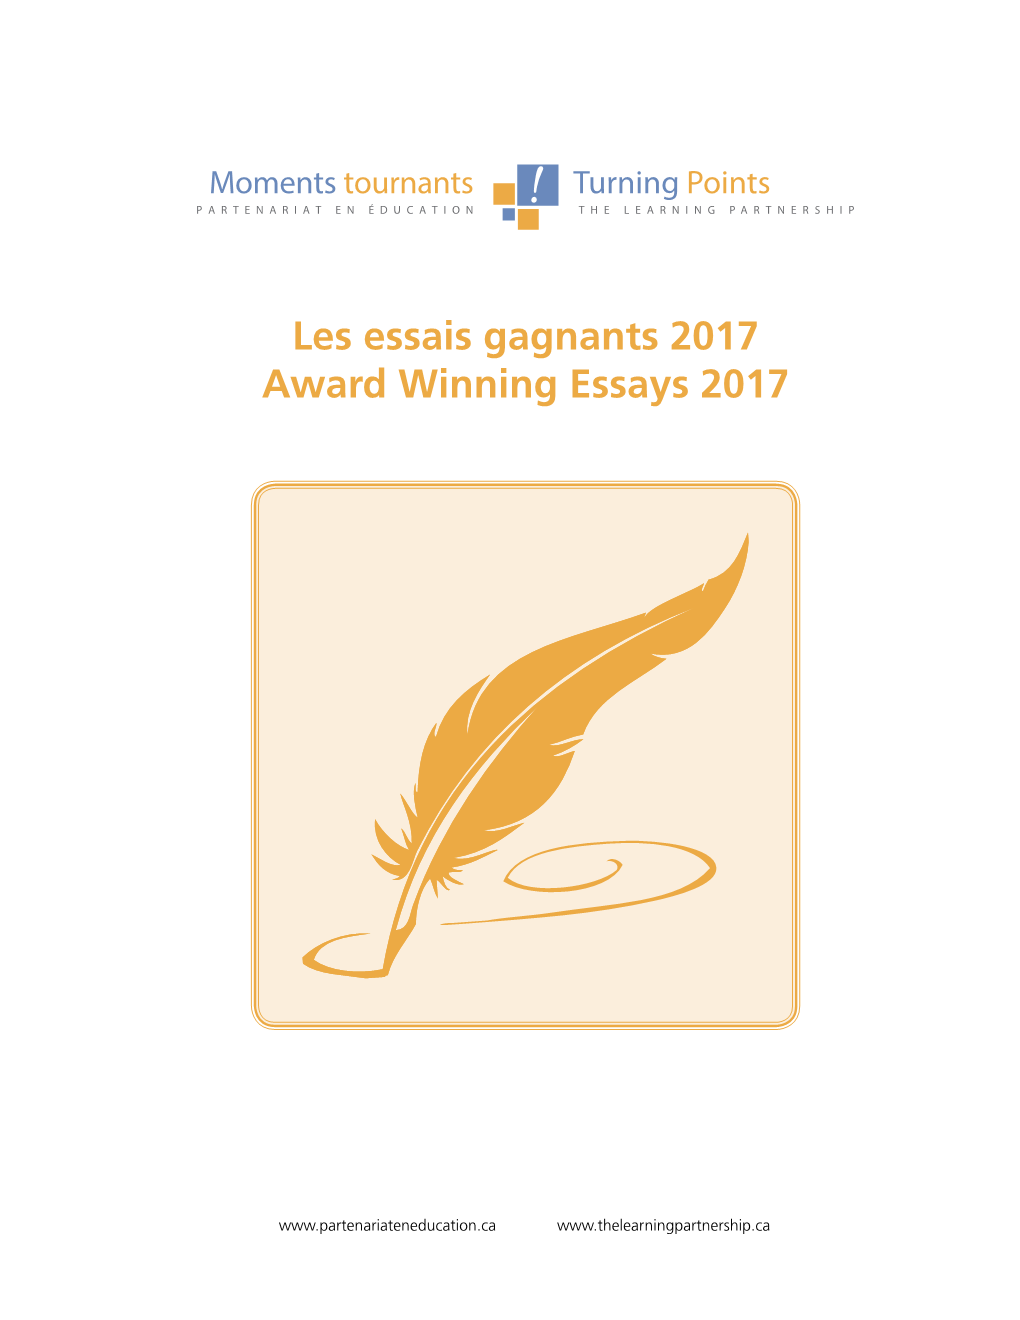 Les Essais Gagnants 2017 Award Winning Essays 2017